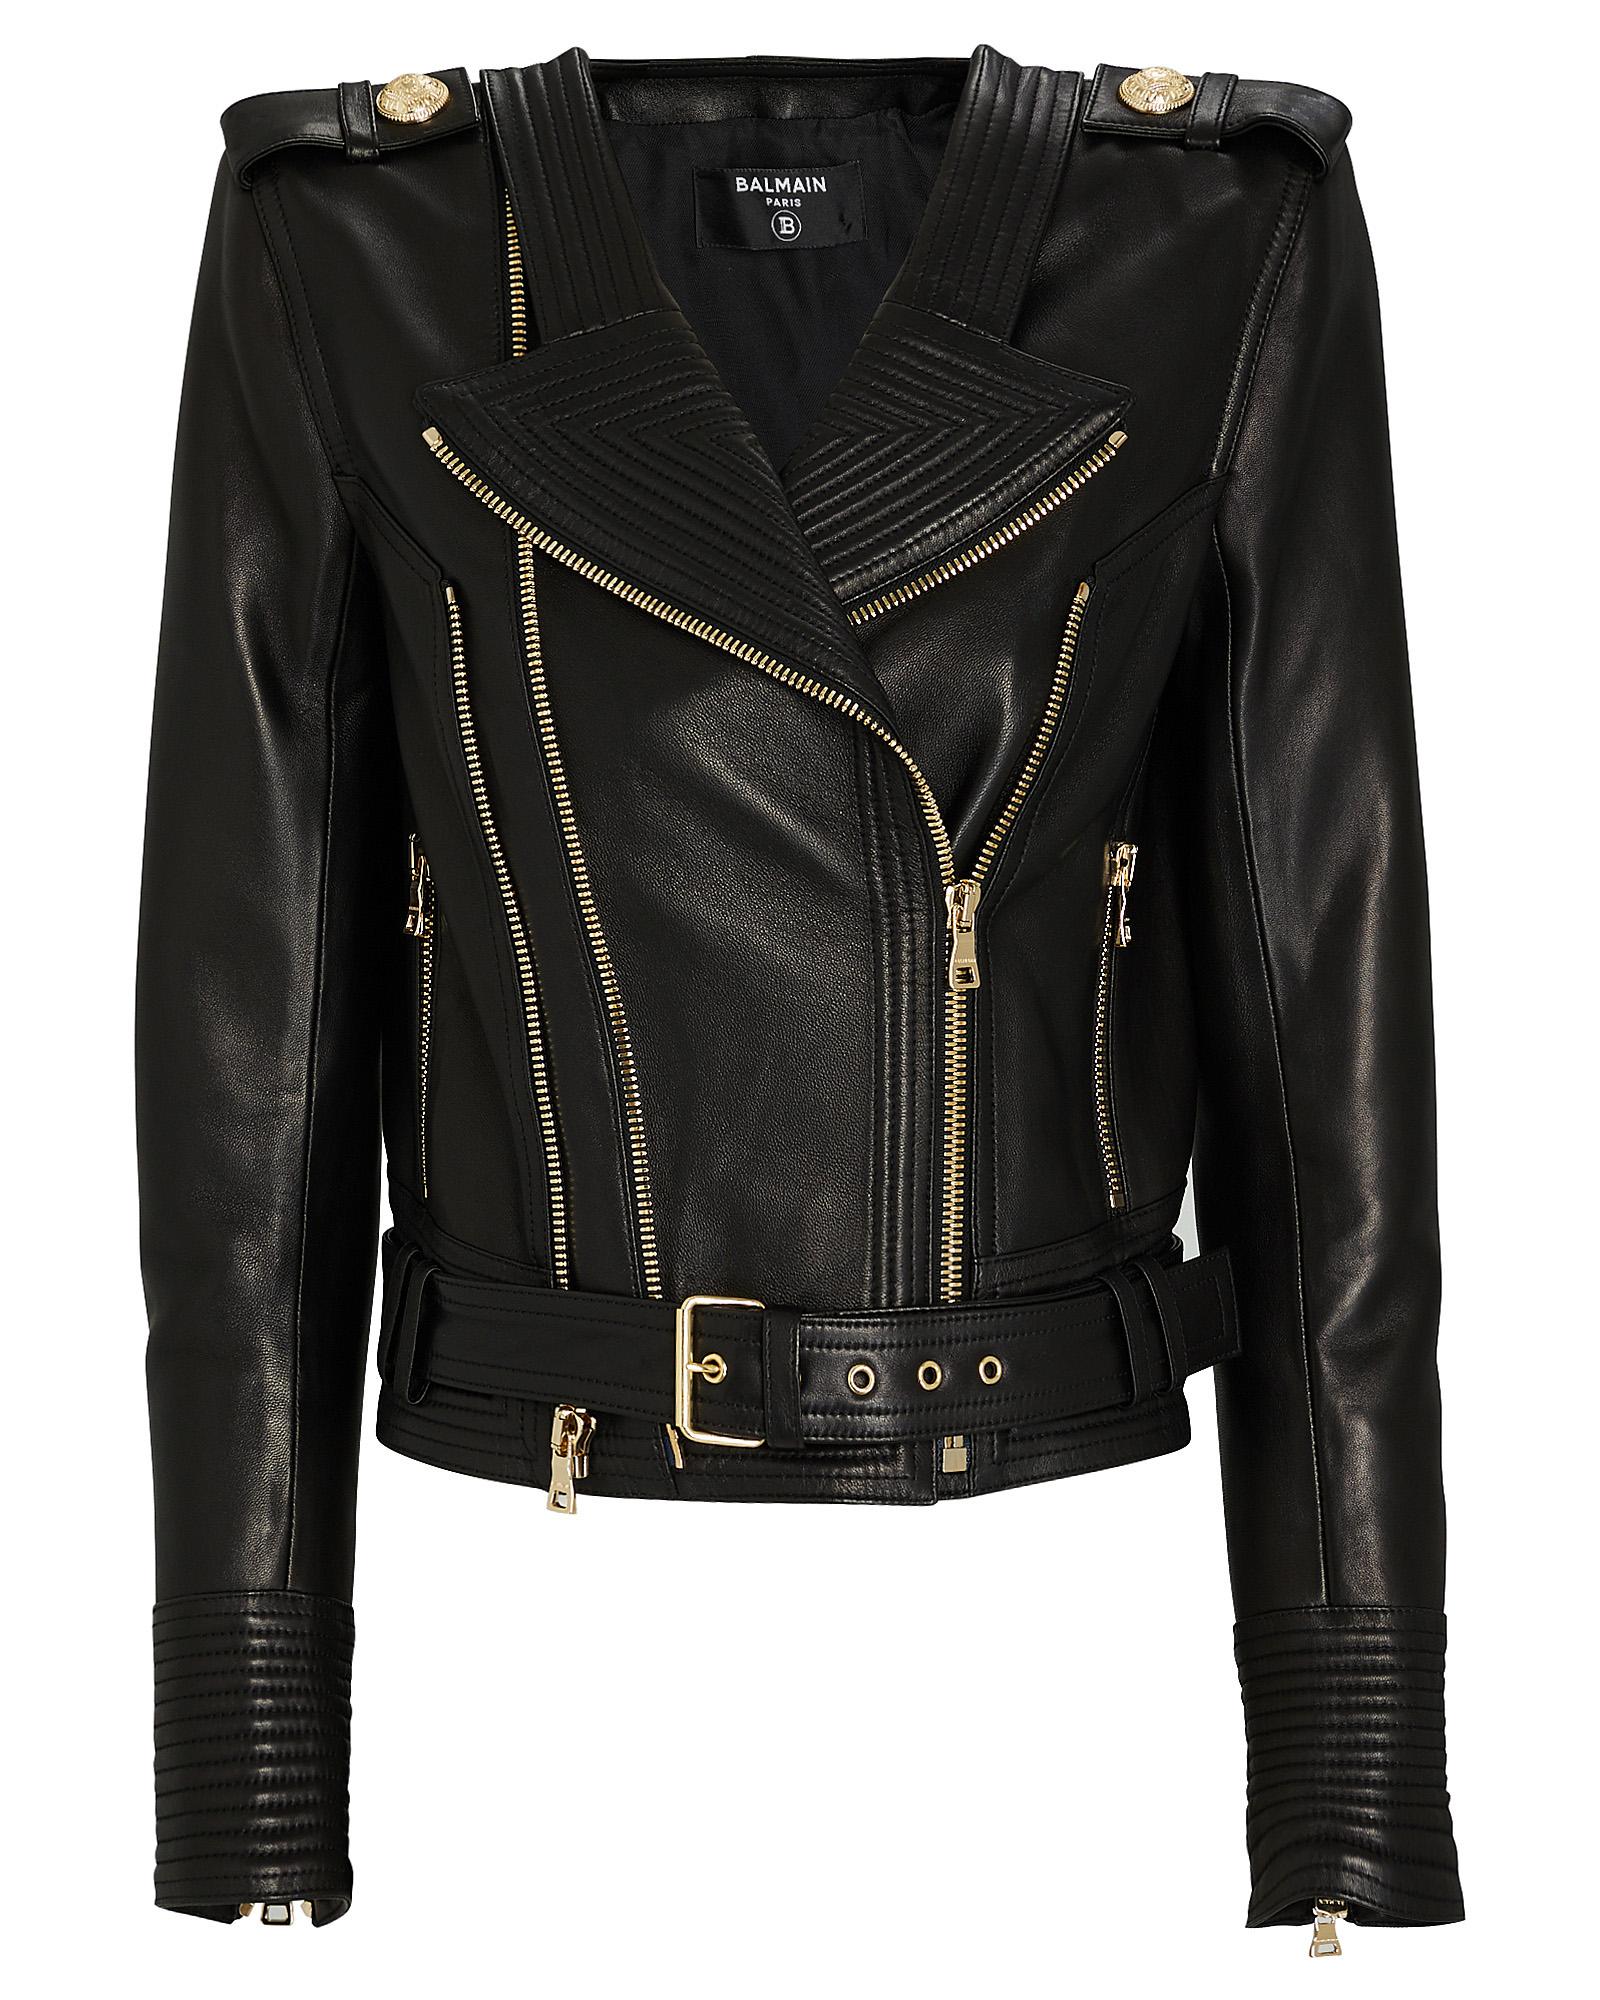 Балмани. Balmain Motorcycle Leather Jacket 2010. Balmain Leather Jacket. Balmain Leather Coat. Balmain Paris куртка.